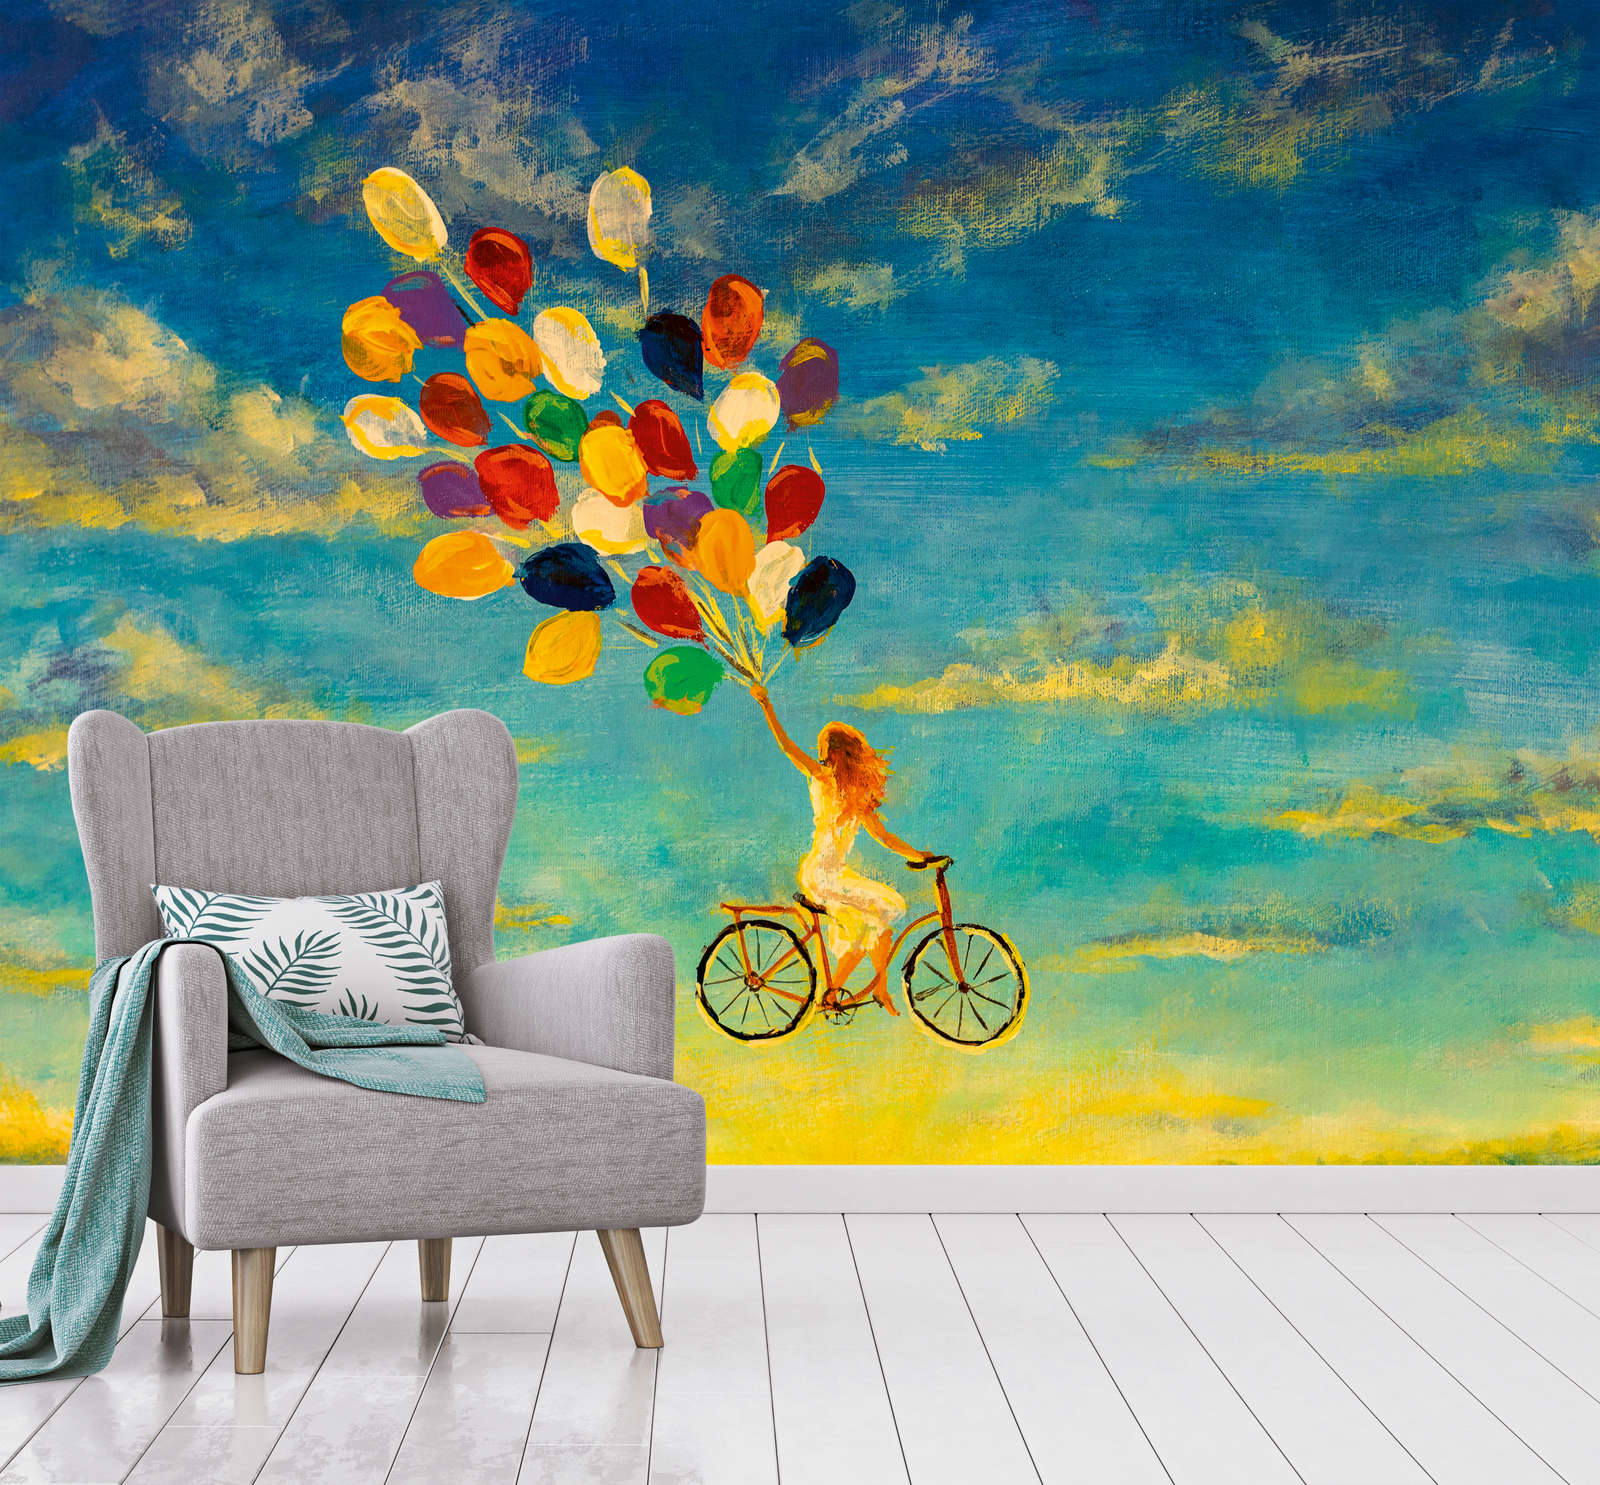             Papier peint panoramique avec femme sur vélo dans le ciel Peinture - bleu, jaune, multicolore
        